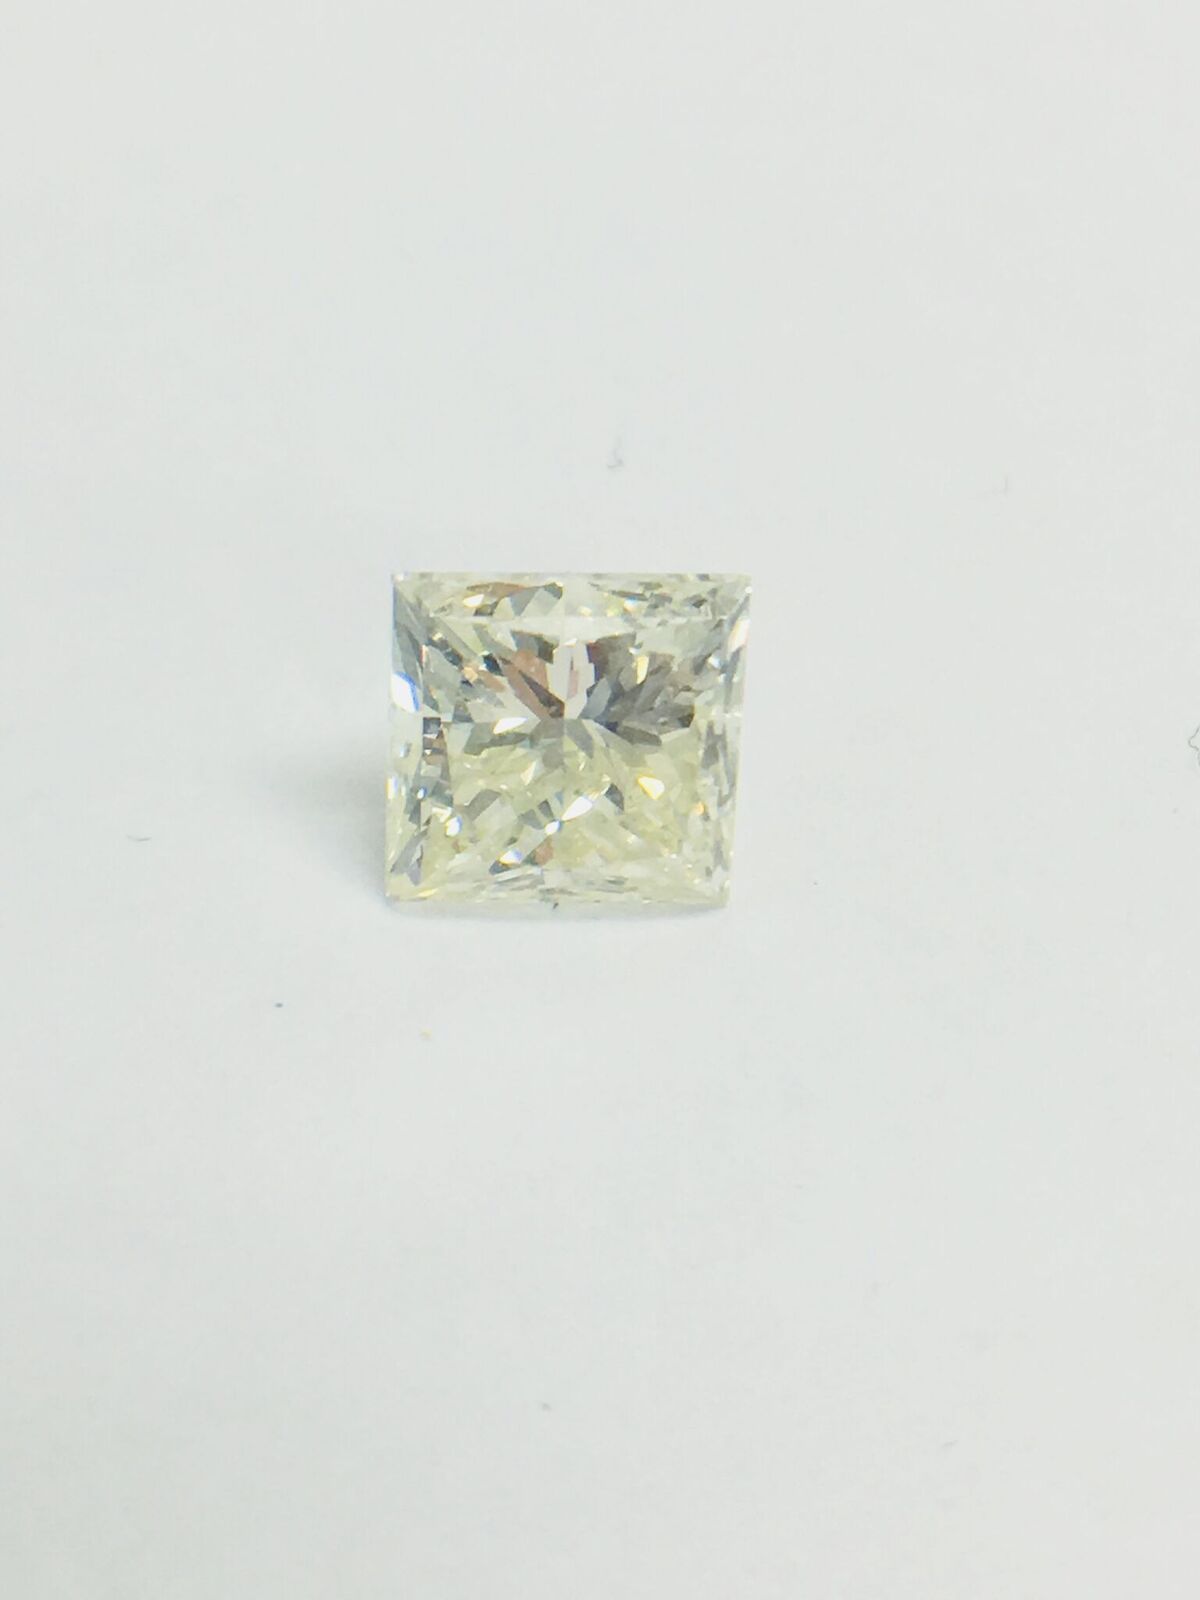 1ct Princess cut Diamond - Image 5 of 35